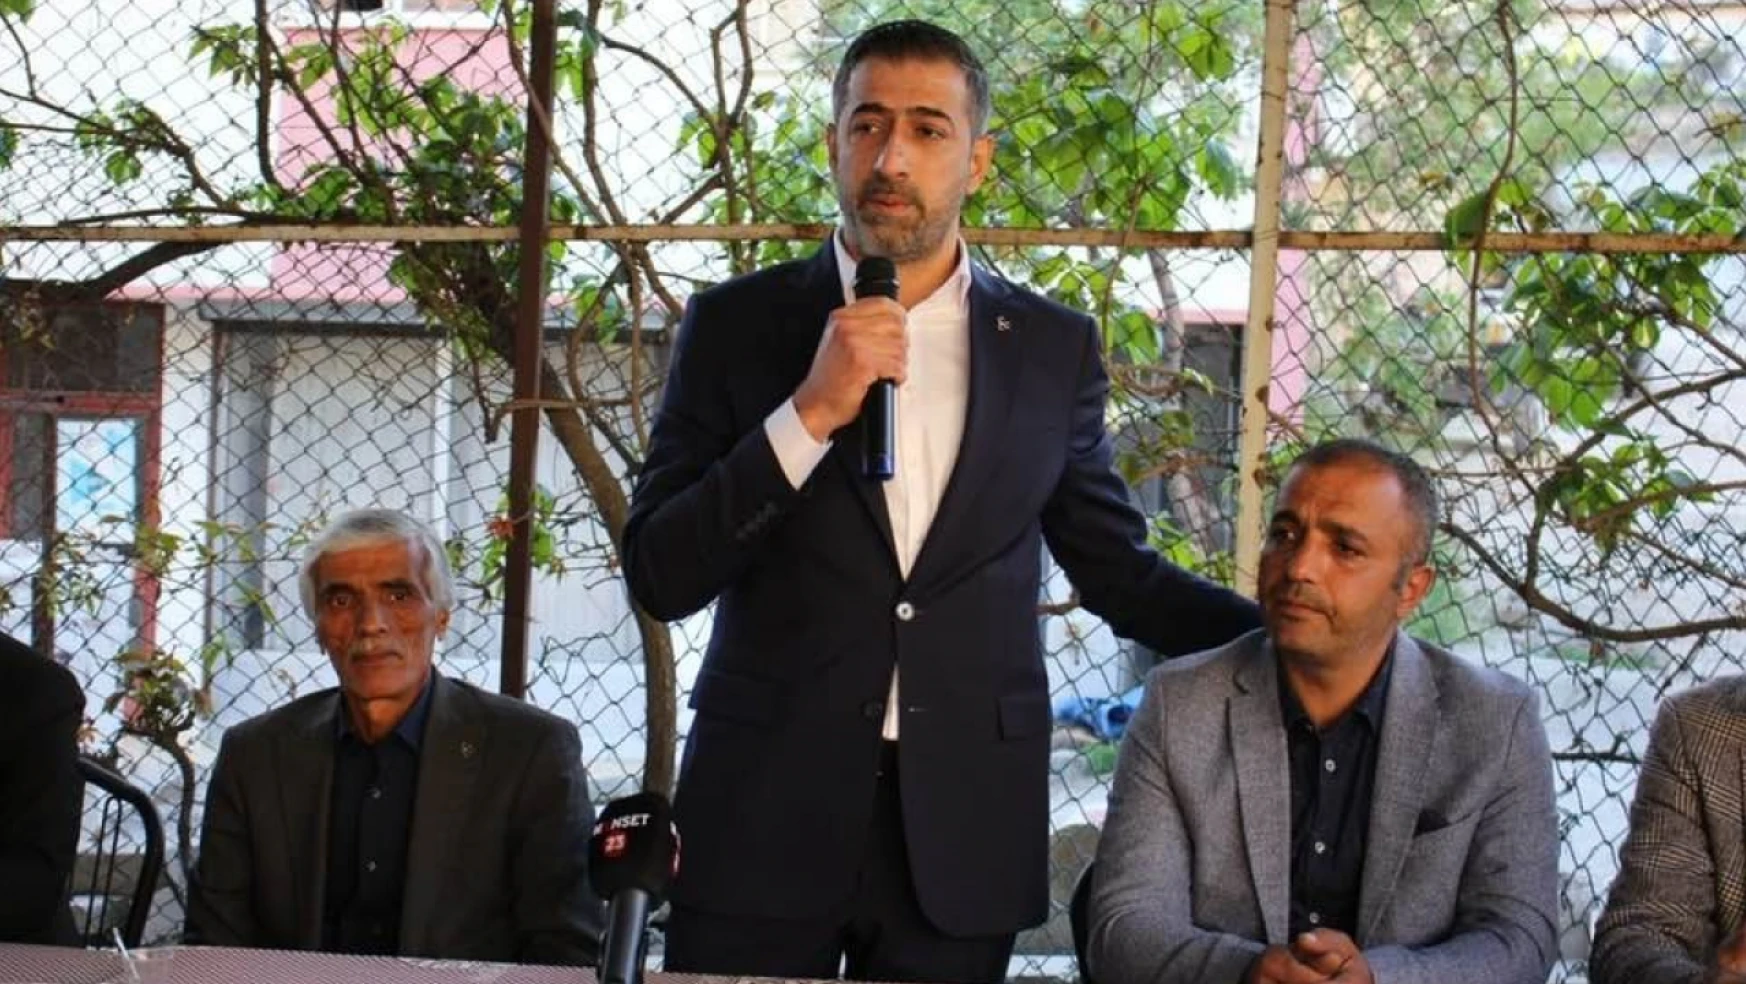 MHP Elazığ 1. Sıra Milletvekili Adayı Işıkver, Keban'ı Karanlıkta Bırakan Zihniyet Gidecek